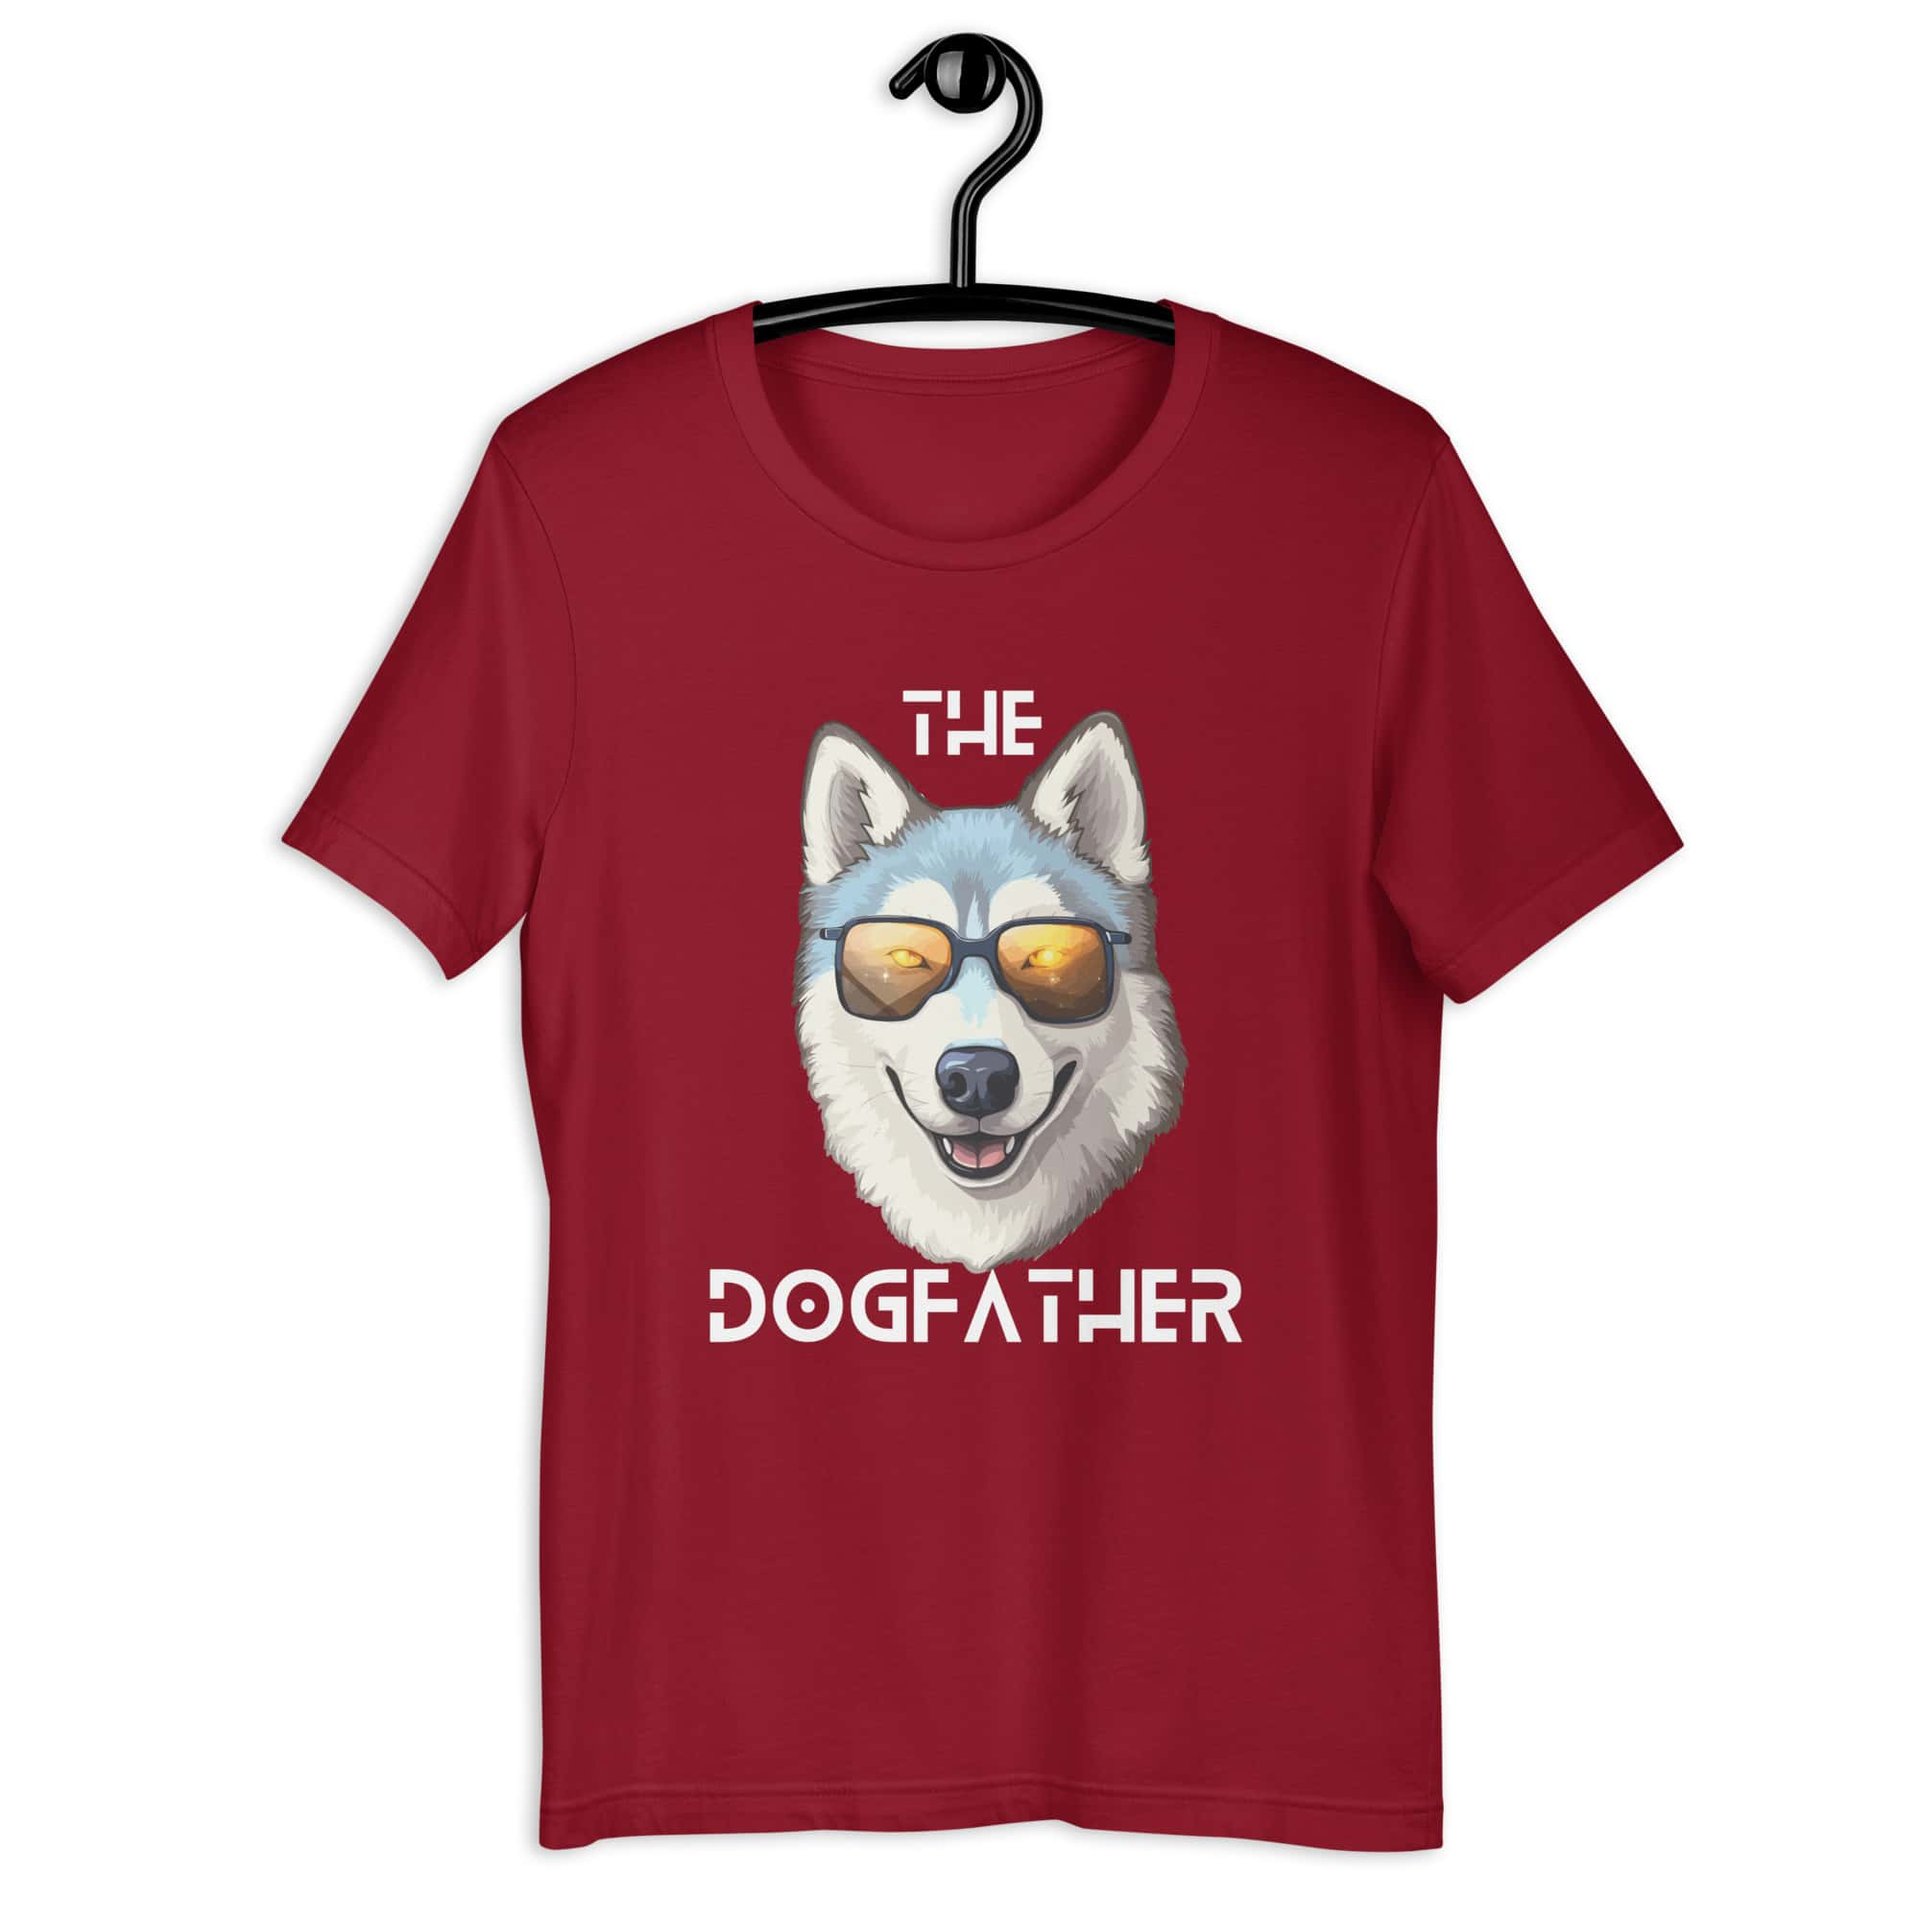 The Dogfather Huskies Unisex T-Shirt. Cardinal